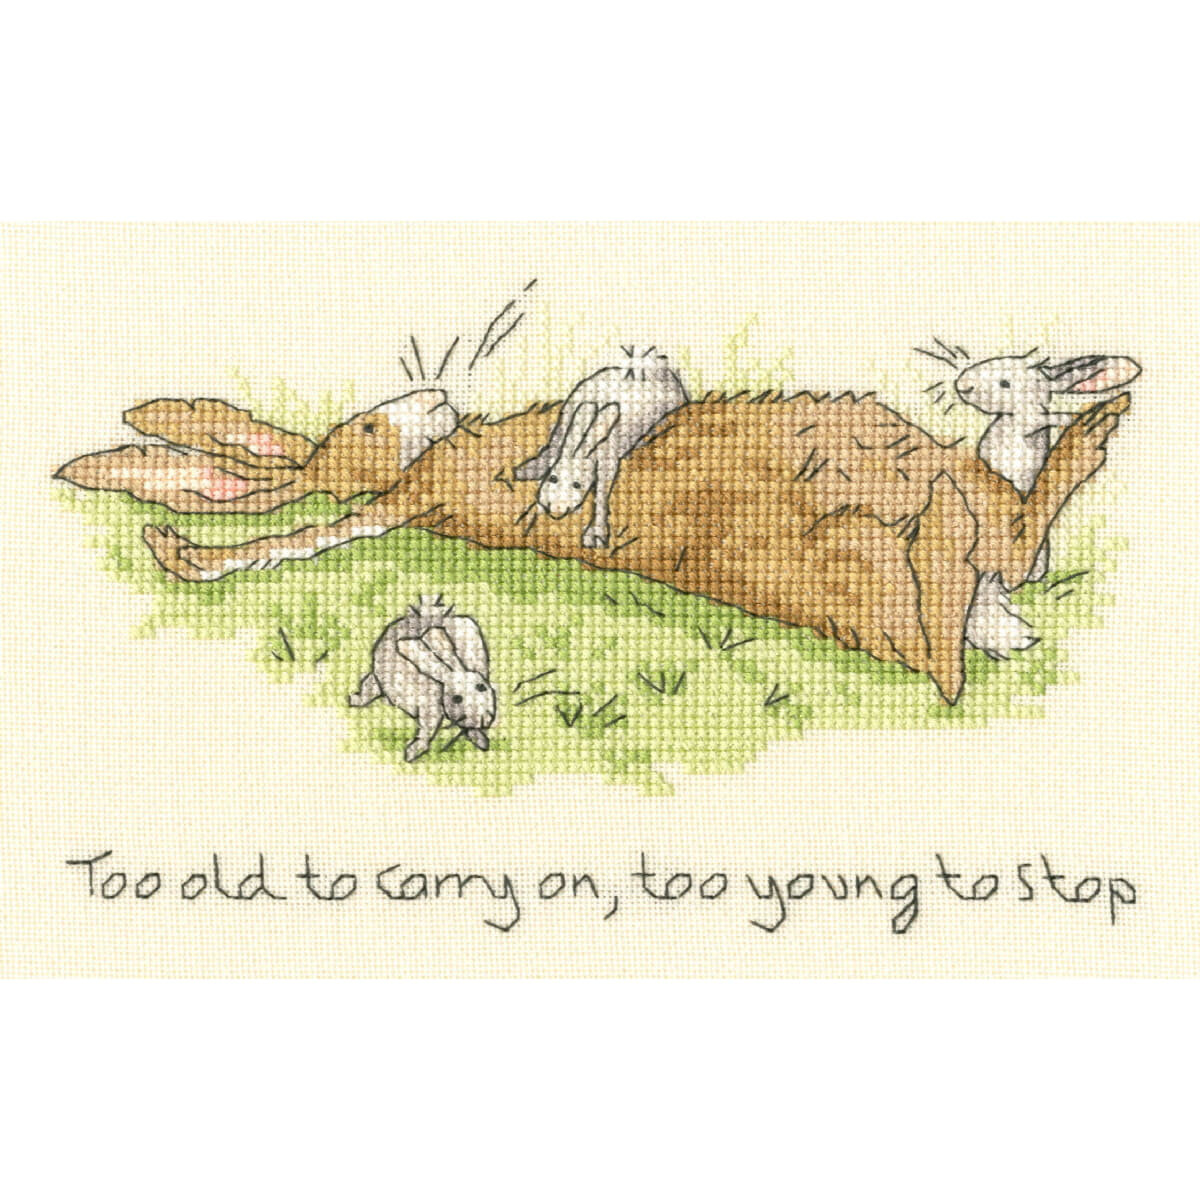 Cartoonartige Zeichnung eines alten braunen Kaninchens,...